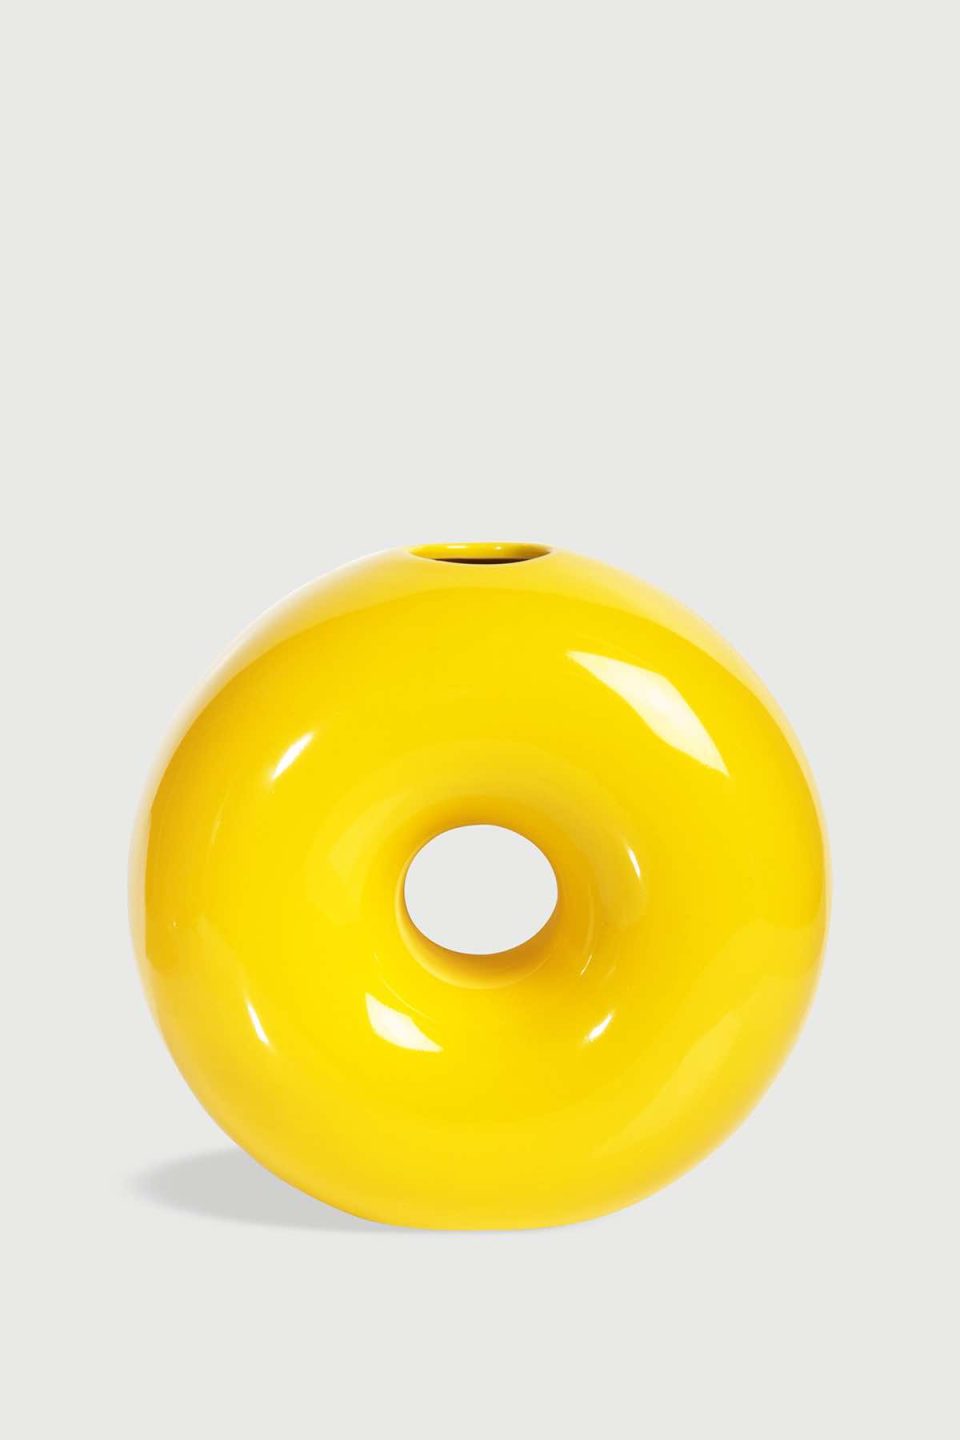 Na slici je prikazana keramičak vaza u obliku kruga s rupom u sredini. Vaza je žute boje i ima malu rupu na vrhu.